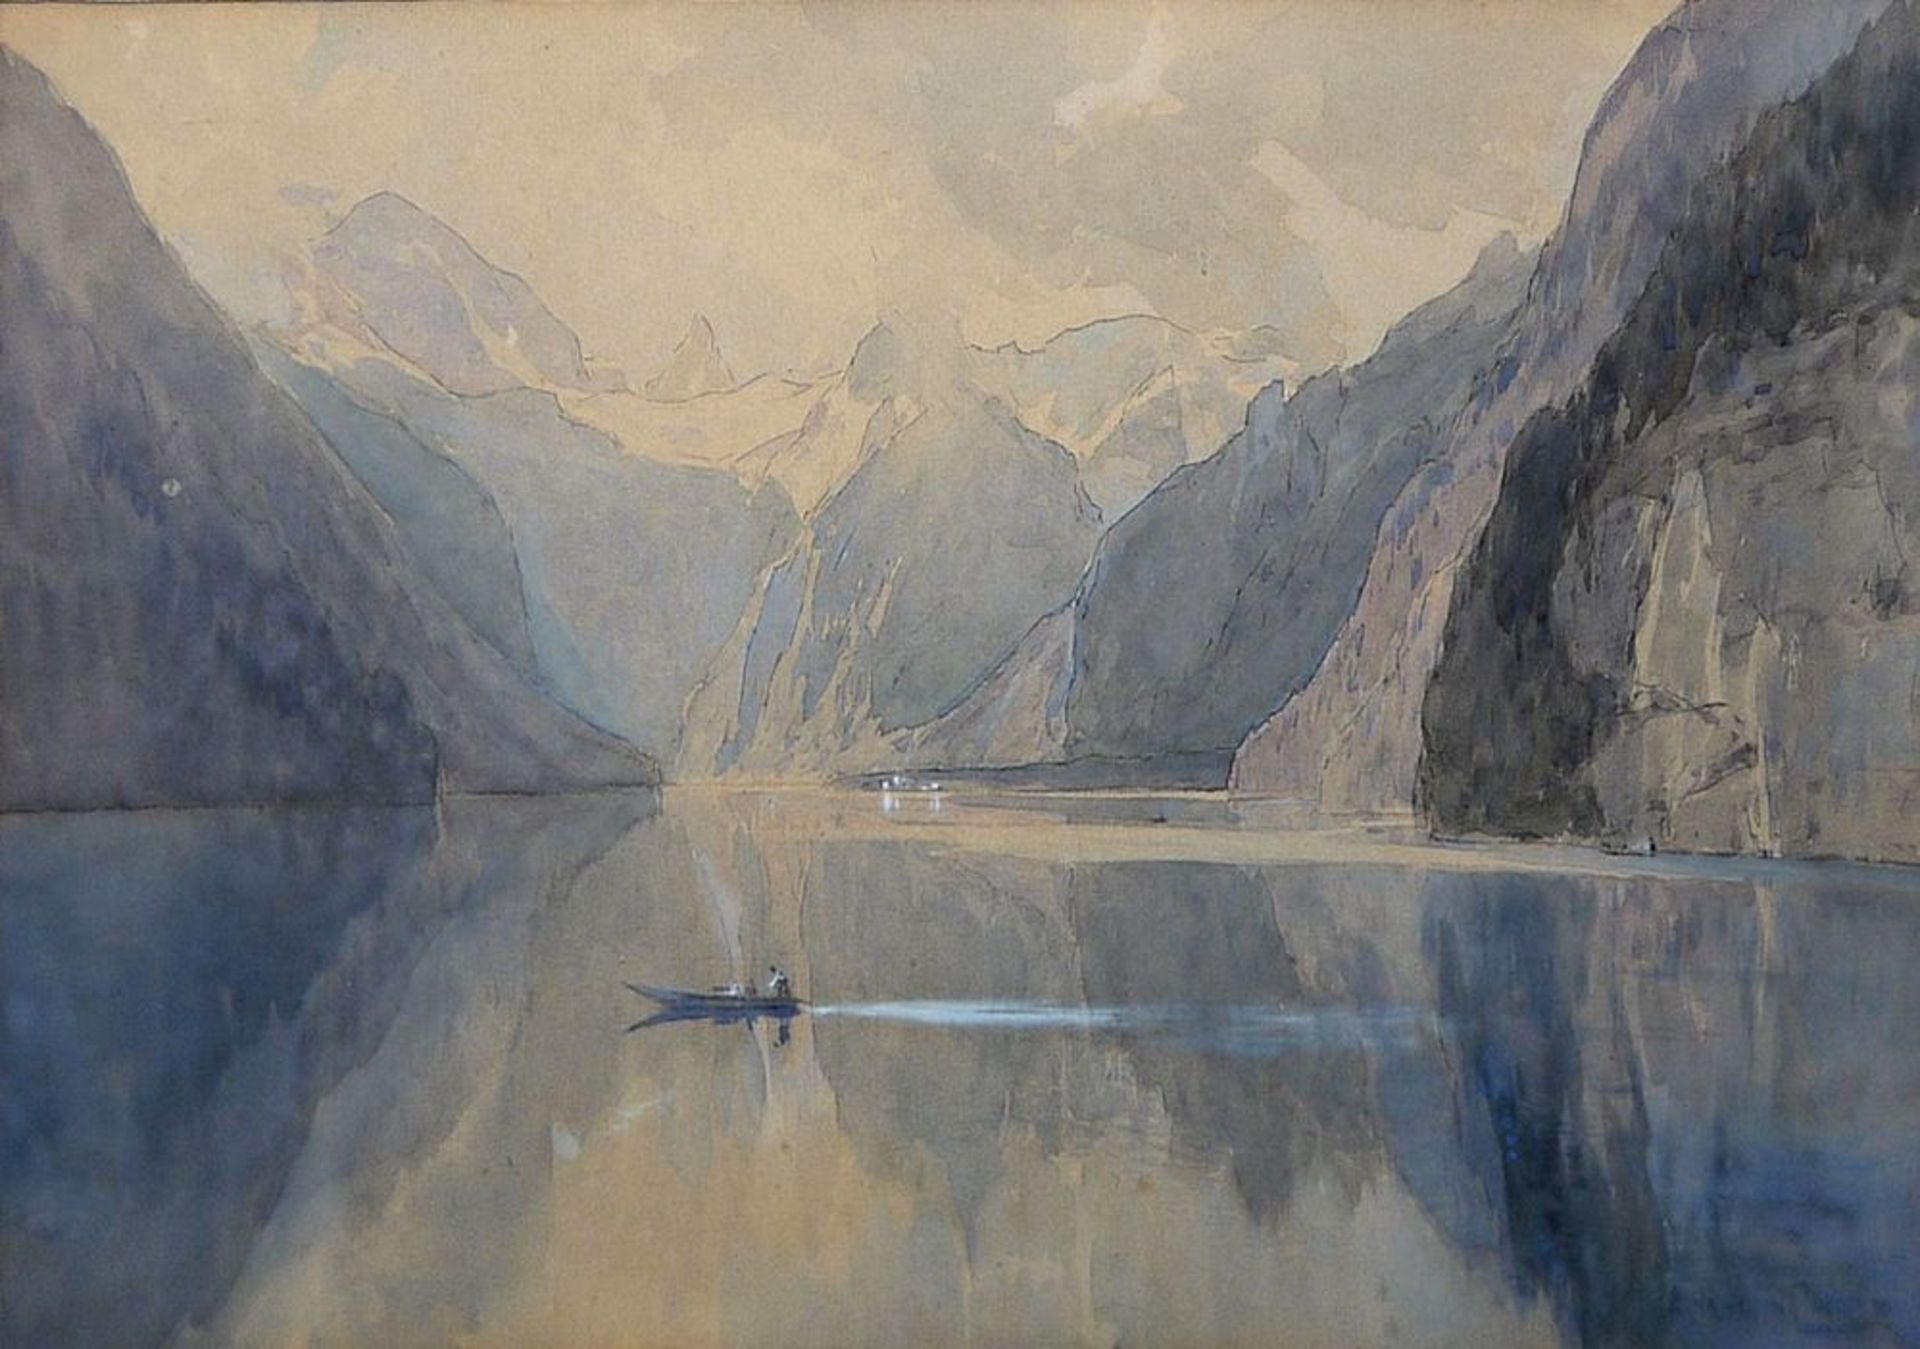 Edward Harrison Compton, Auf dem Königssee, signiertes Aquarell von (19)02, gerahmt - Bild 3 aus 3